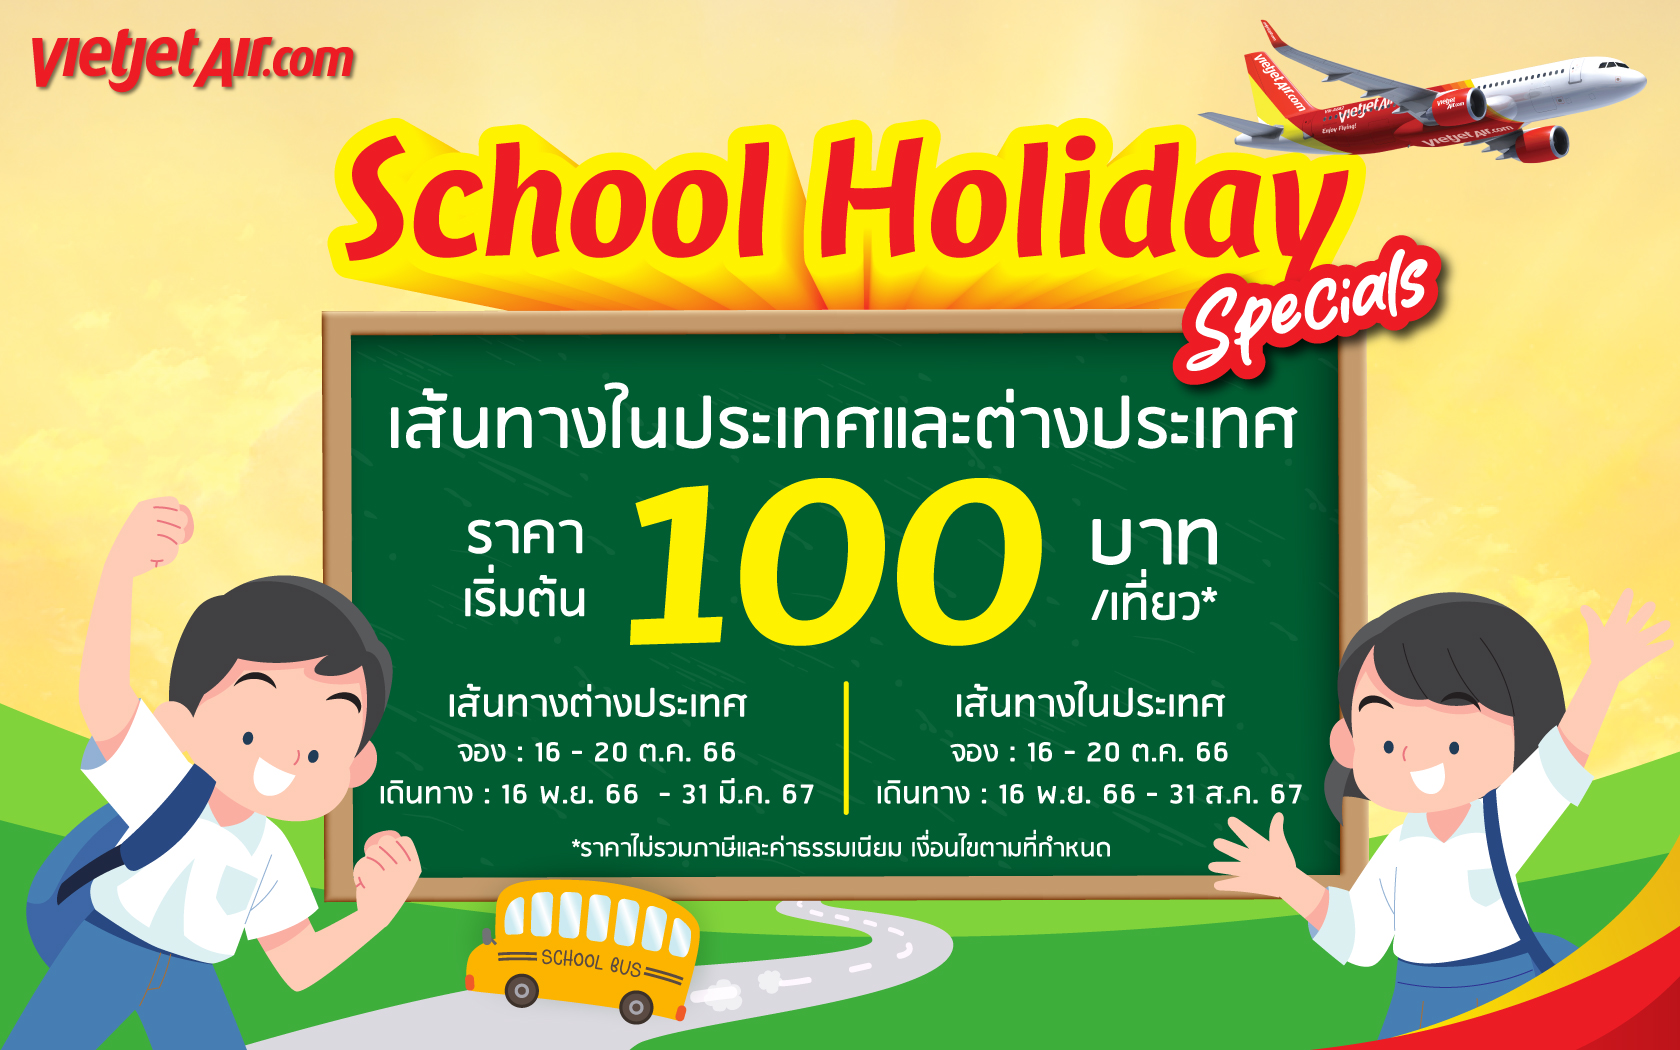 ไทยเวียตเจ็ทออกโปรฯ ‘School Holiday Specials’ ตั๋วเริ่มต้น 100 บาท